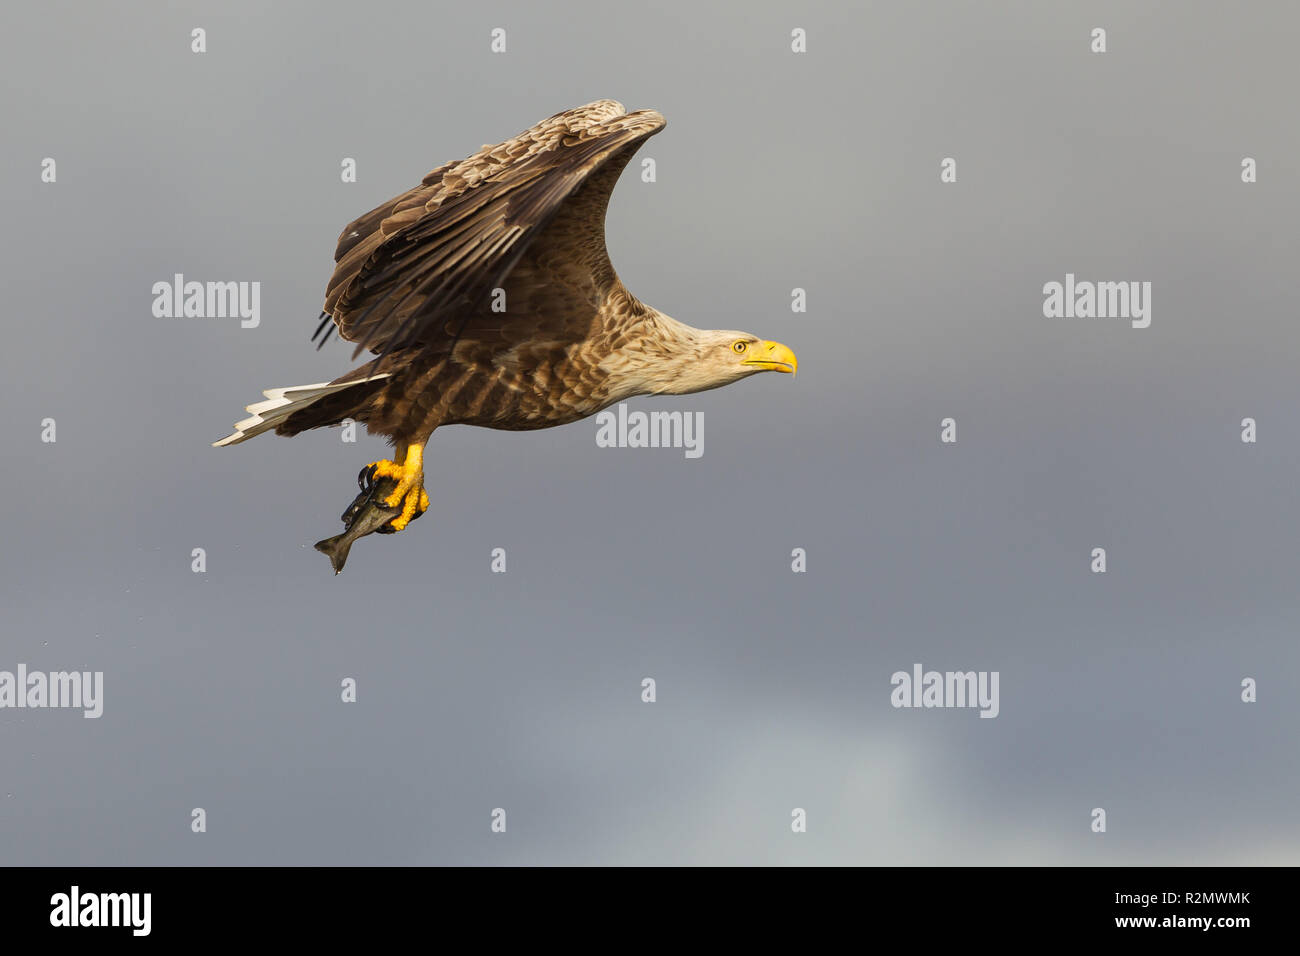 White-tailed eagle flying avec des poissons de proie Banque D'Images